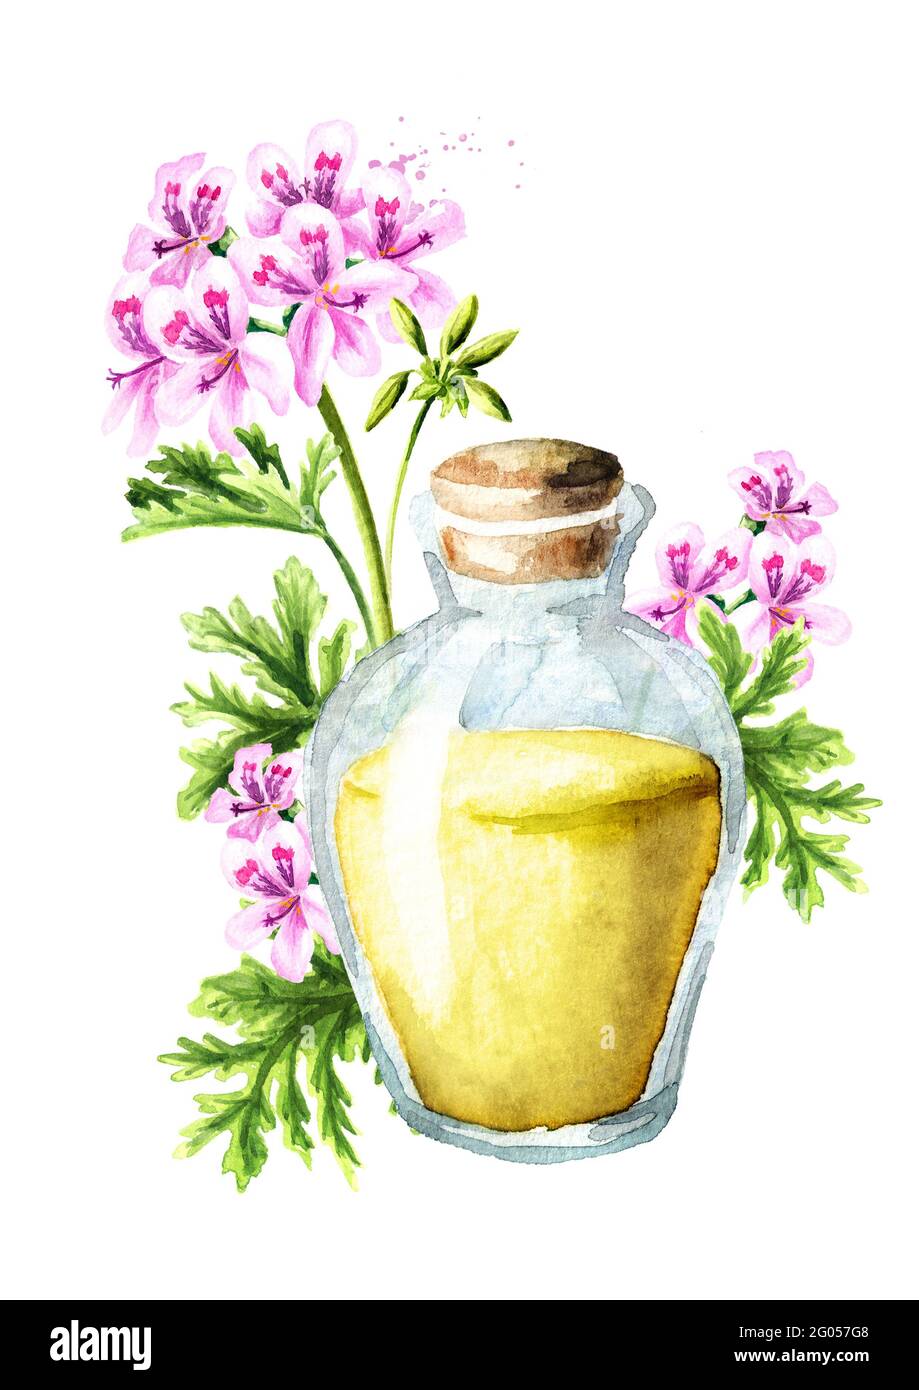 Pelargonium graveolens or Pelargonium x asperum, geranium flower and essential oil. Watercolor hand drawn illustration isolated on white background Stock Photo